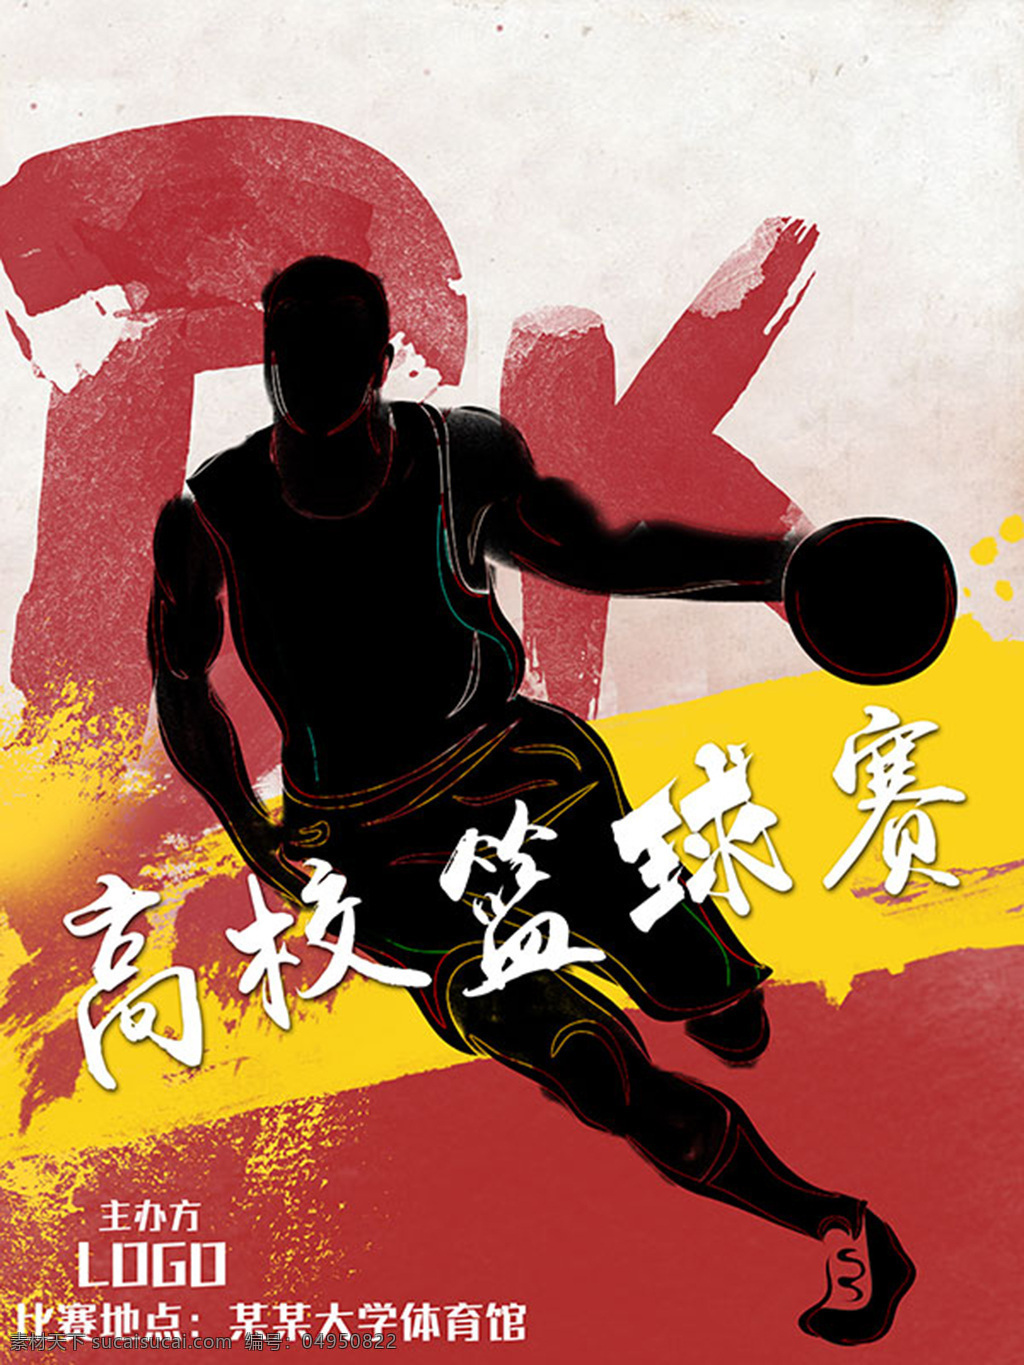 篮球比赛海报 校园 篮球赛 海报 分层 篮球比赛背景 打篮球的人物 剪影 pk字体 肌理背景 笔刷效果 高校篮球赛 宣传广告